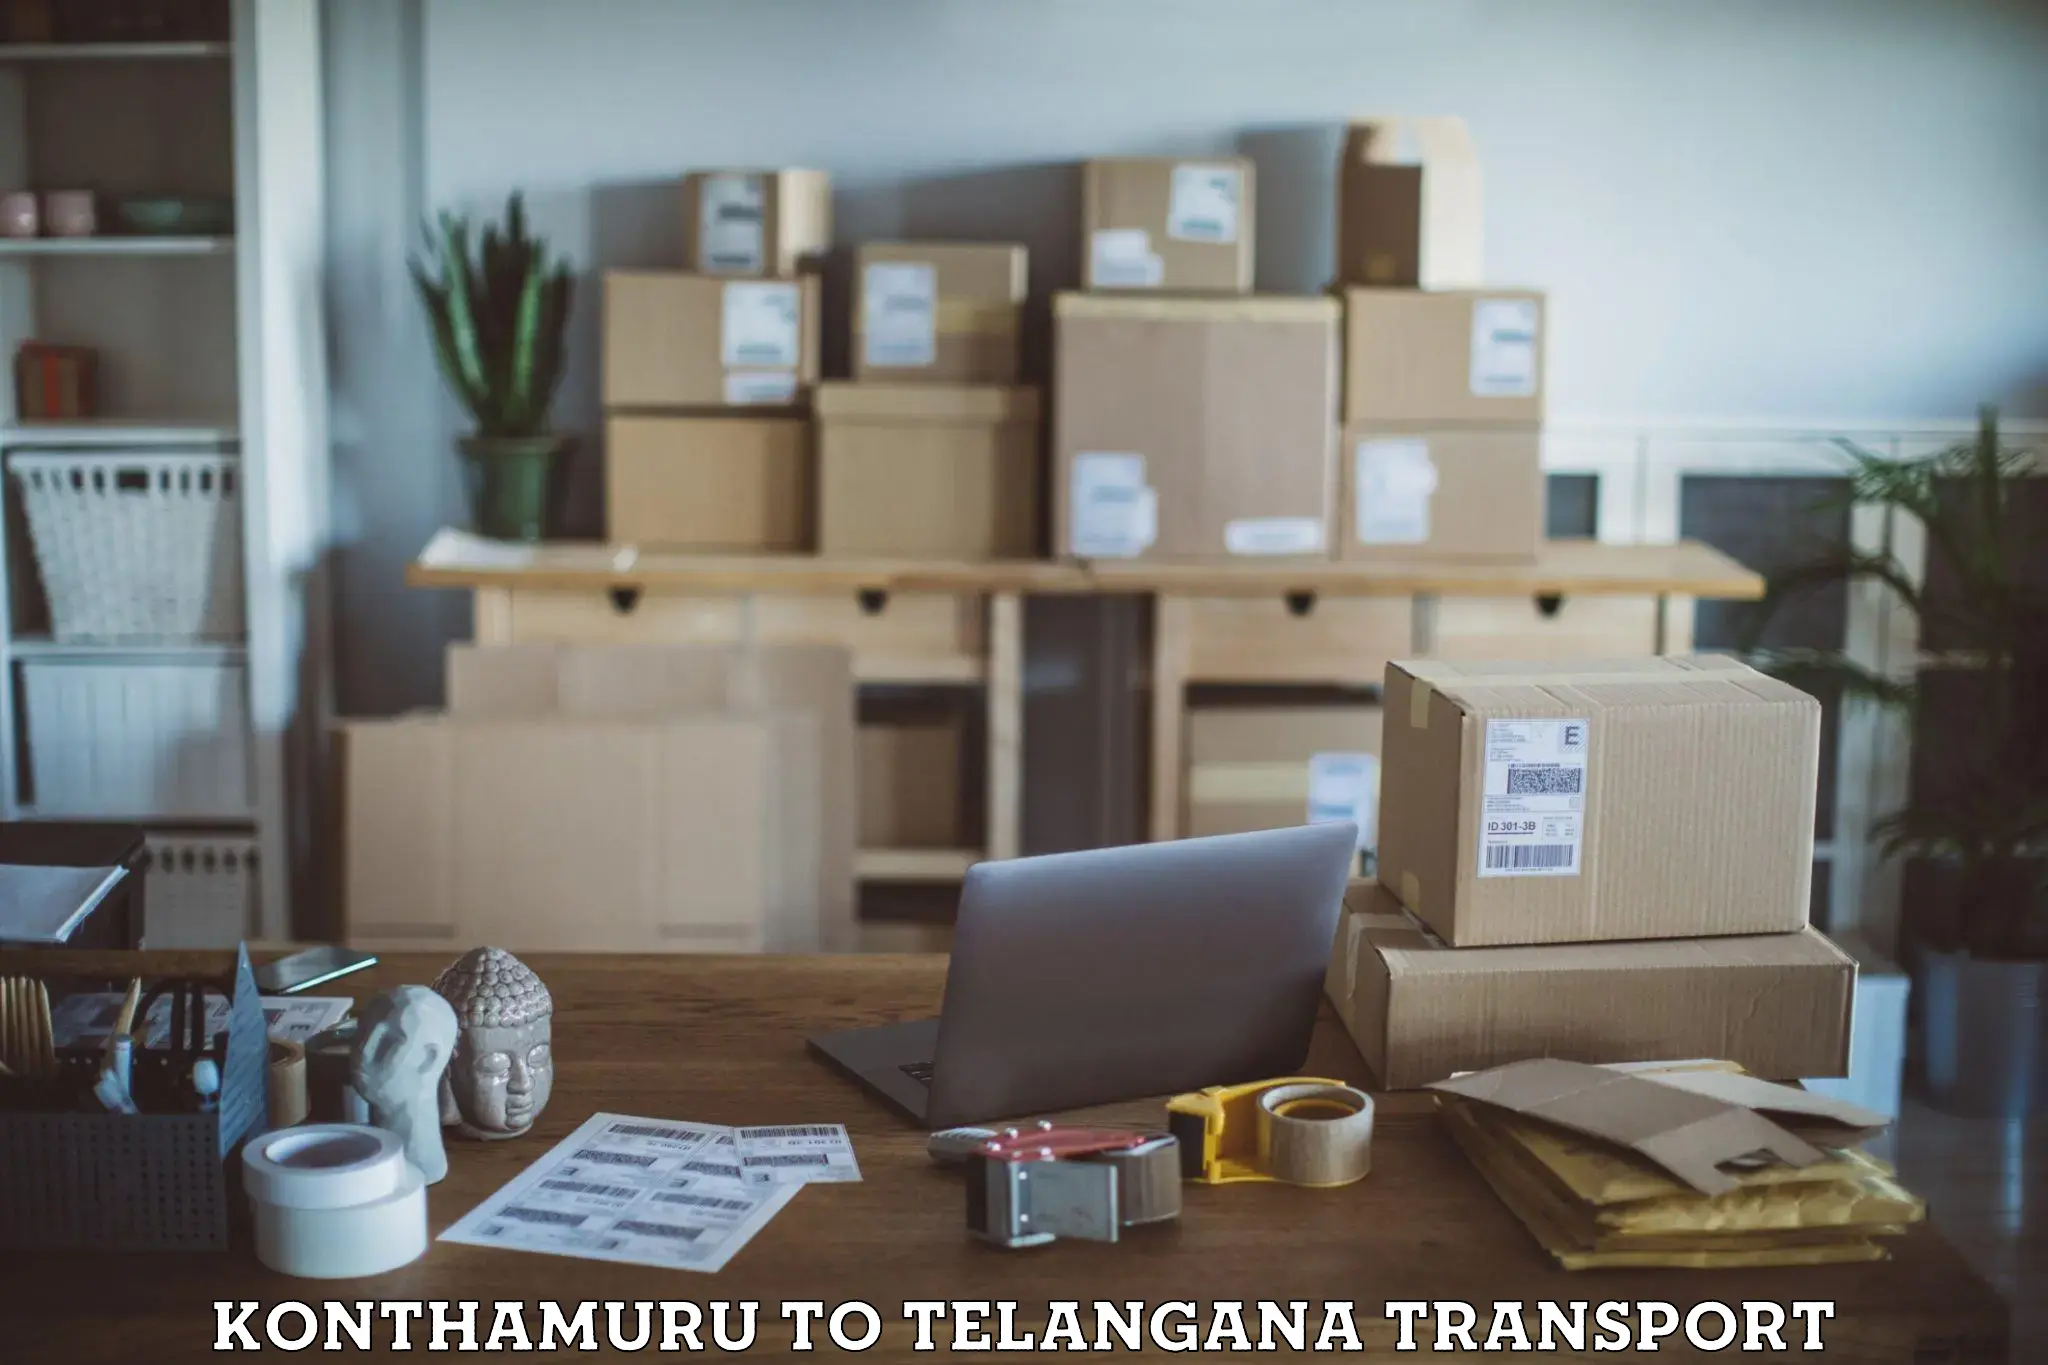 Online transport service Konthamuru to Telangana